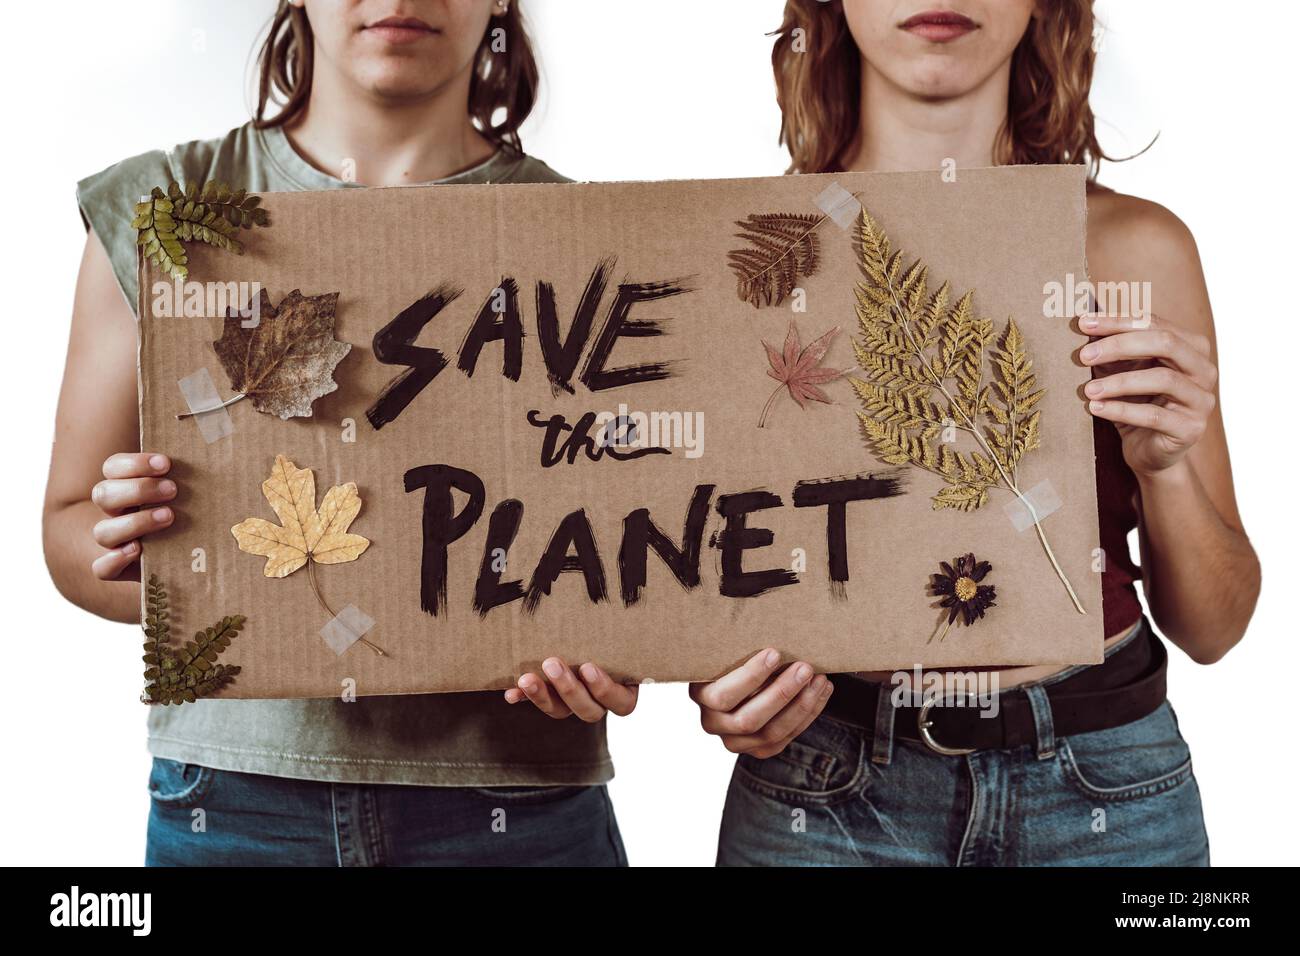 Deux jeunes militantes tenant un carton avec le message "Save the Planet", des feuilles et des fleurs Banque D'Images